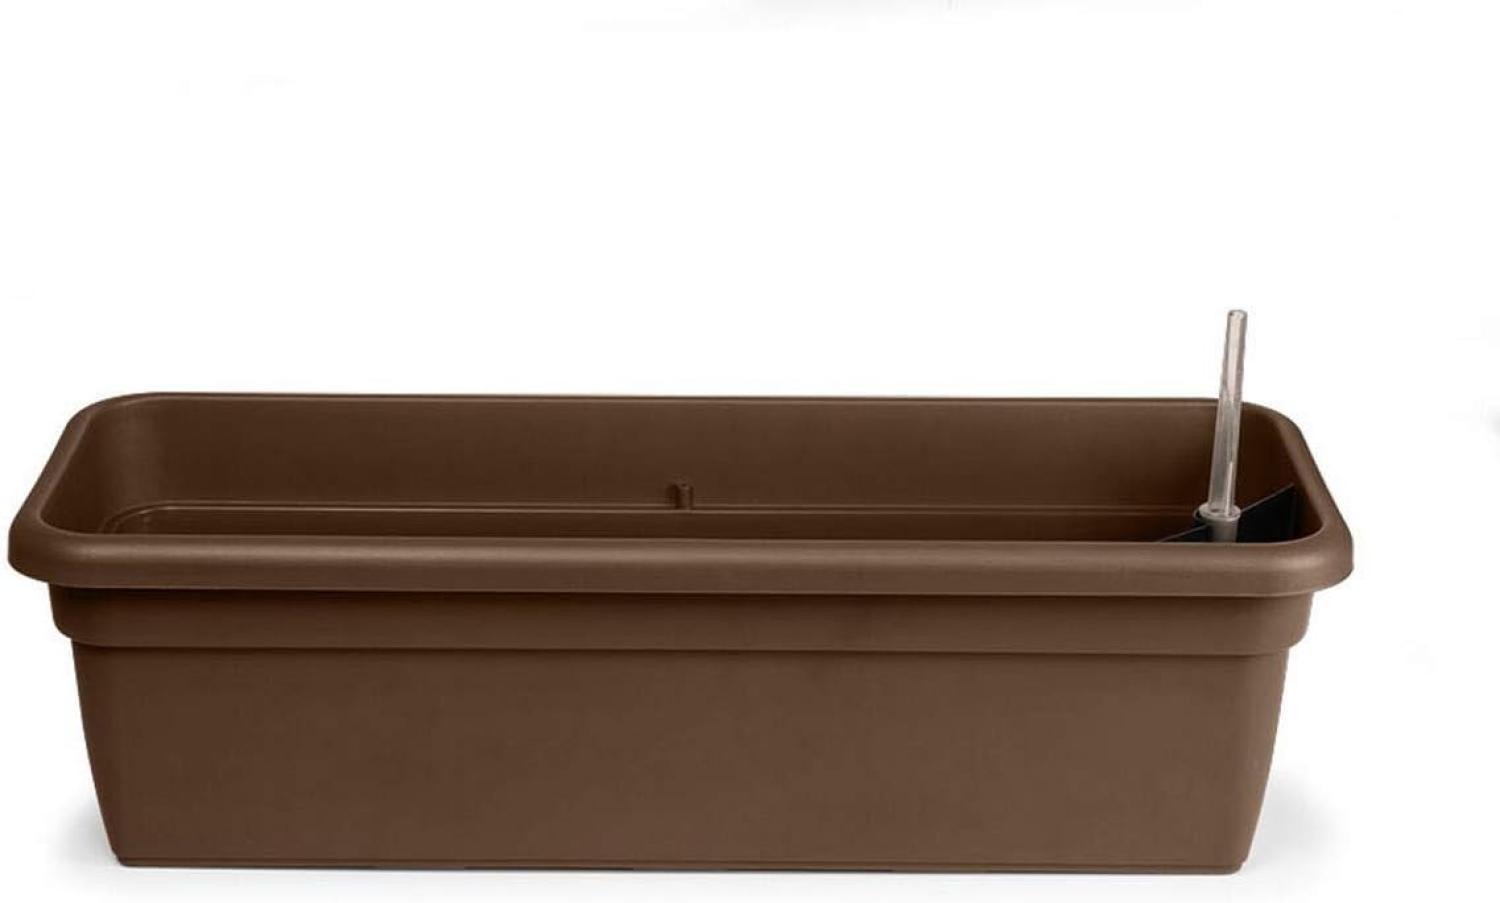 Balkonkasten FLORA Braun mit Bewässerungseinsatz 79 cm - Kunststoff - Geda Bild 1